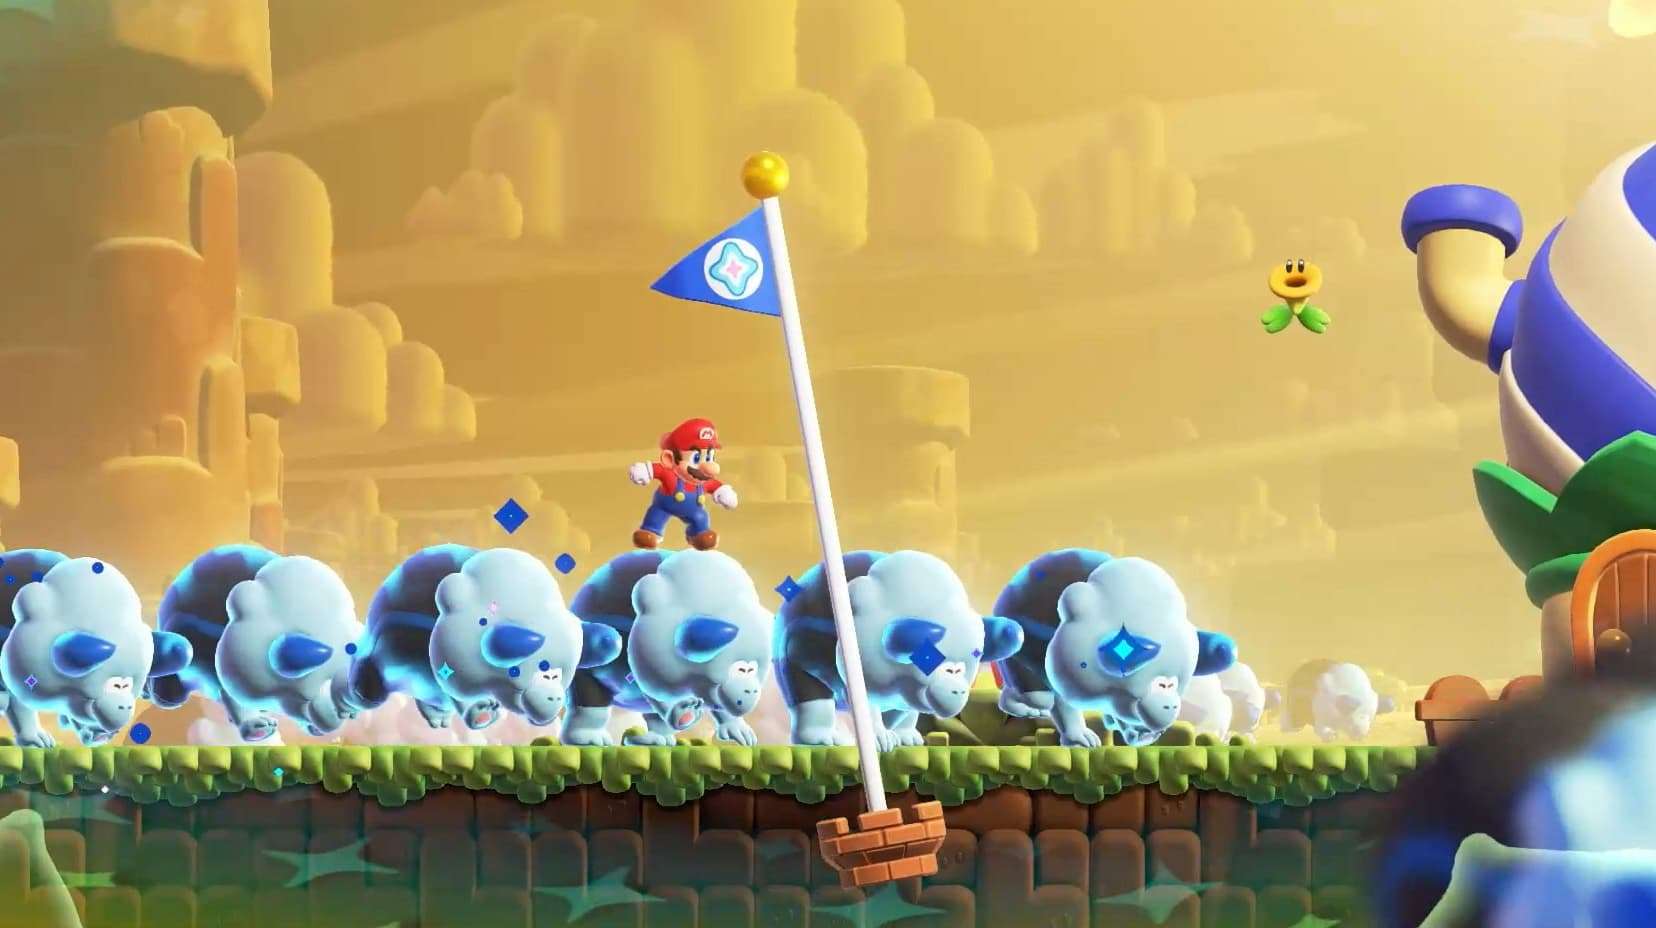 Mario riding rhinos to flag pole in Super Mario Bros. Wonder